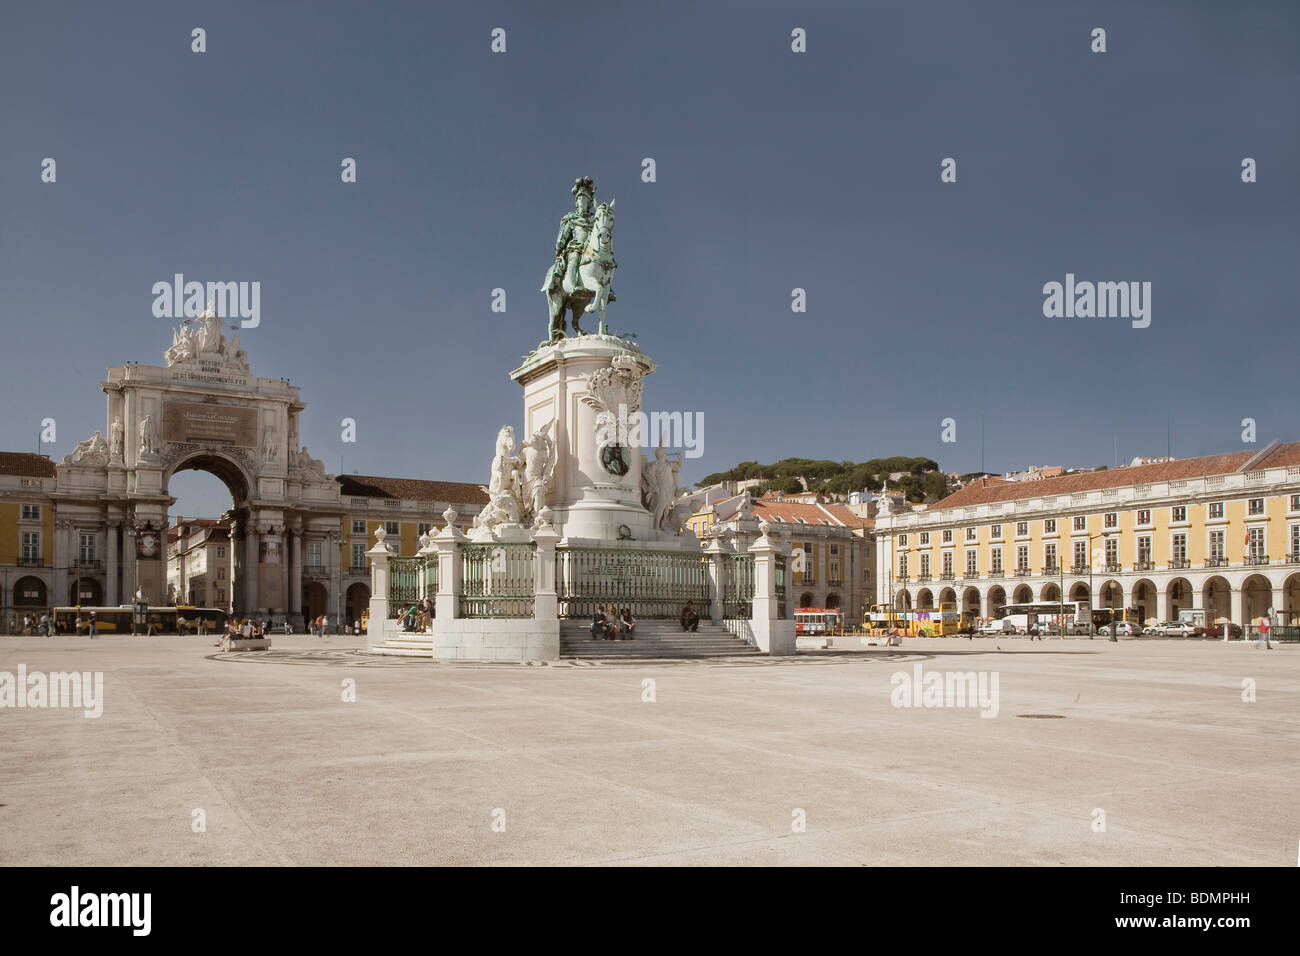 Lissabon, Praca do Comercio, Prächtiger Platz in Lissabon, Reiterstandbild von König Jose I., Arco Monumental von 1873 Stock Photo